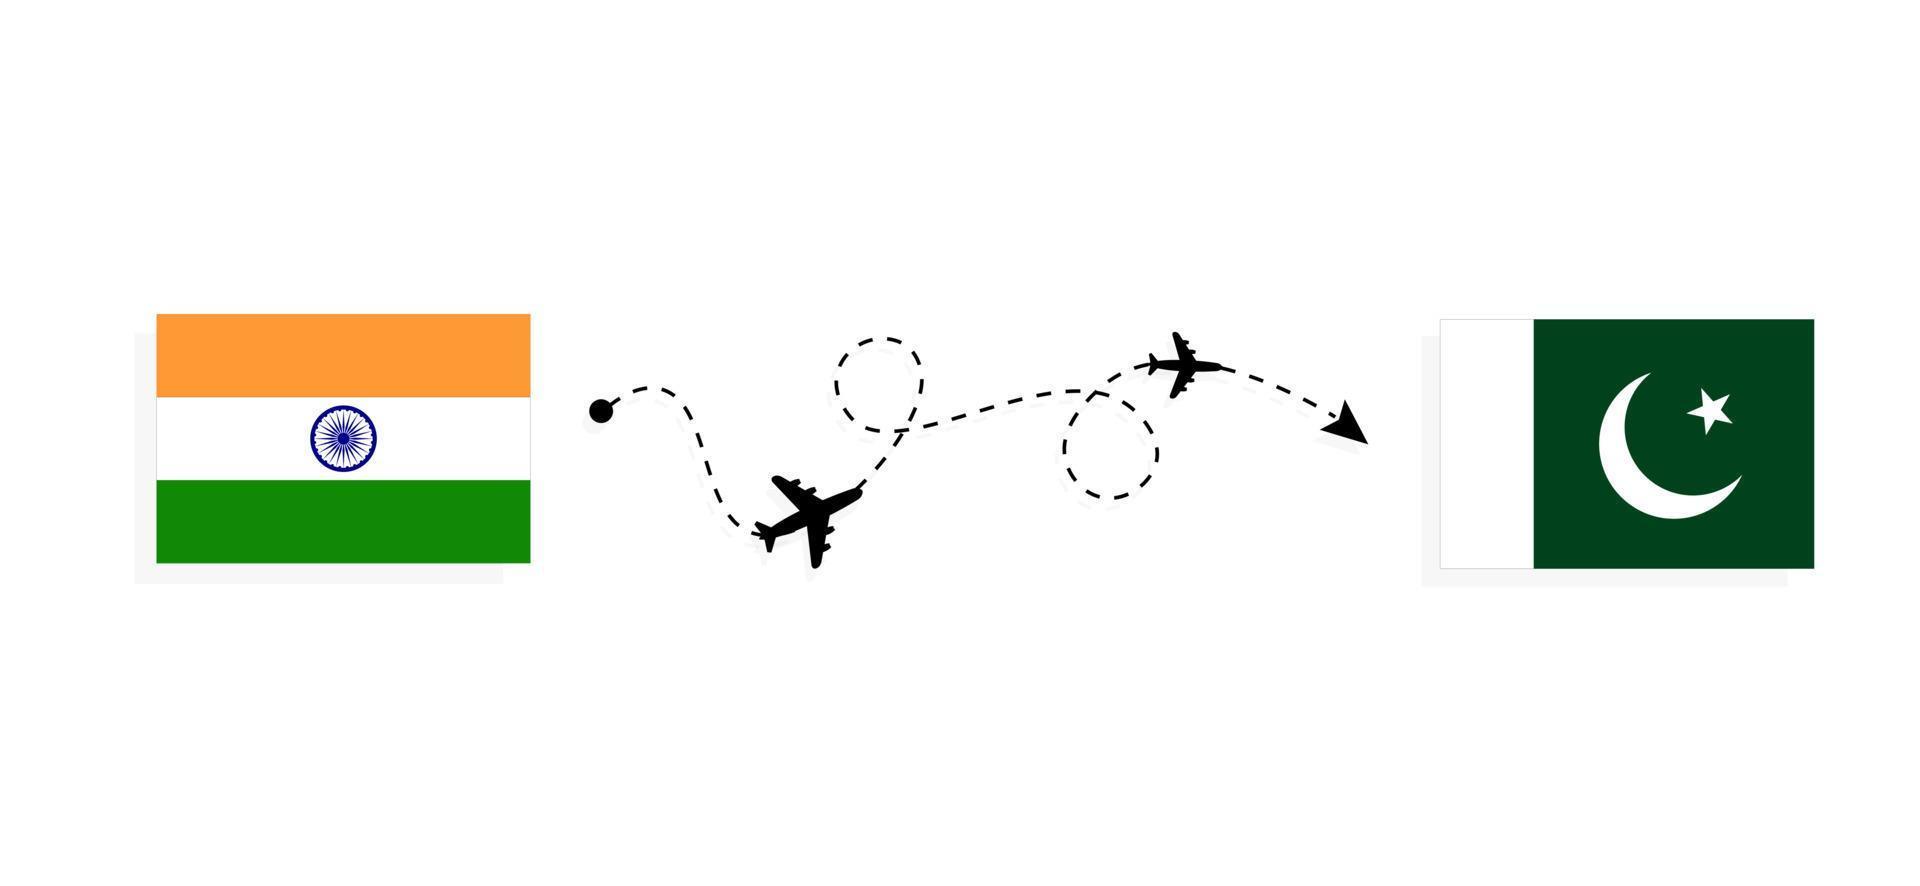 vol et voyage de l'inde au pakistan par concept de voyage en avion de passagers vecteur